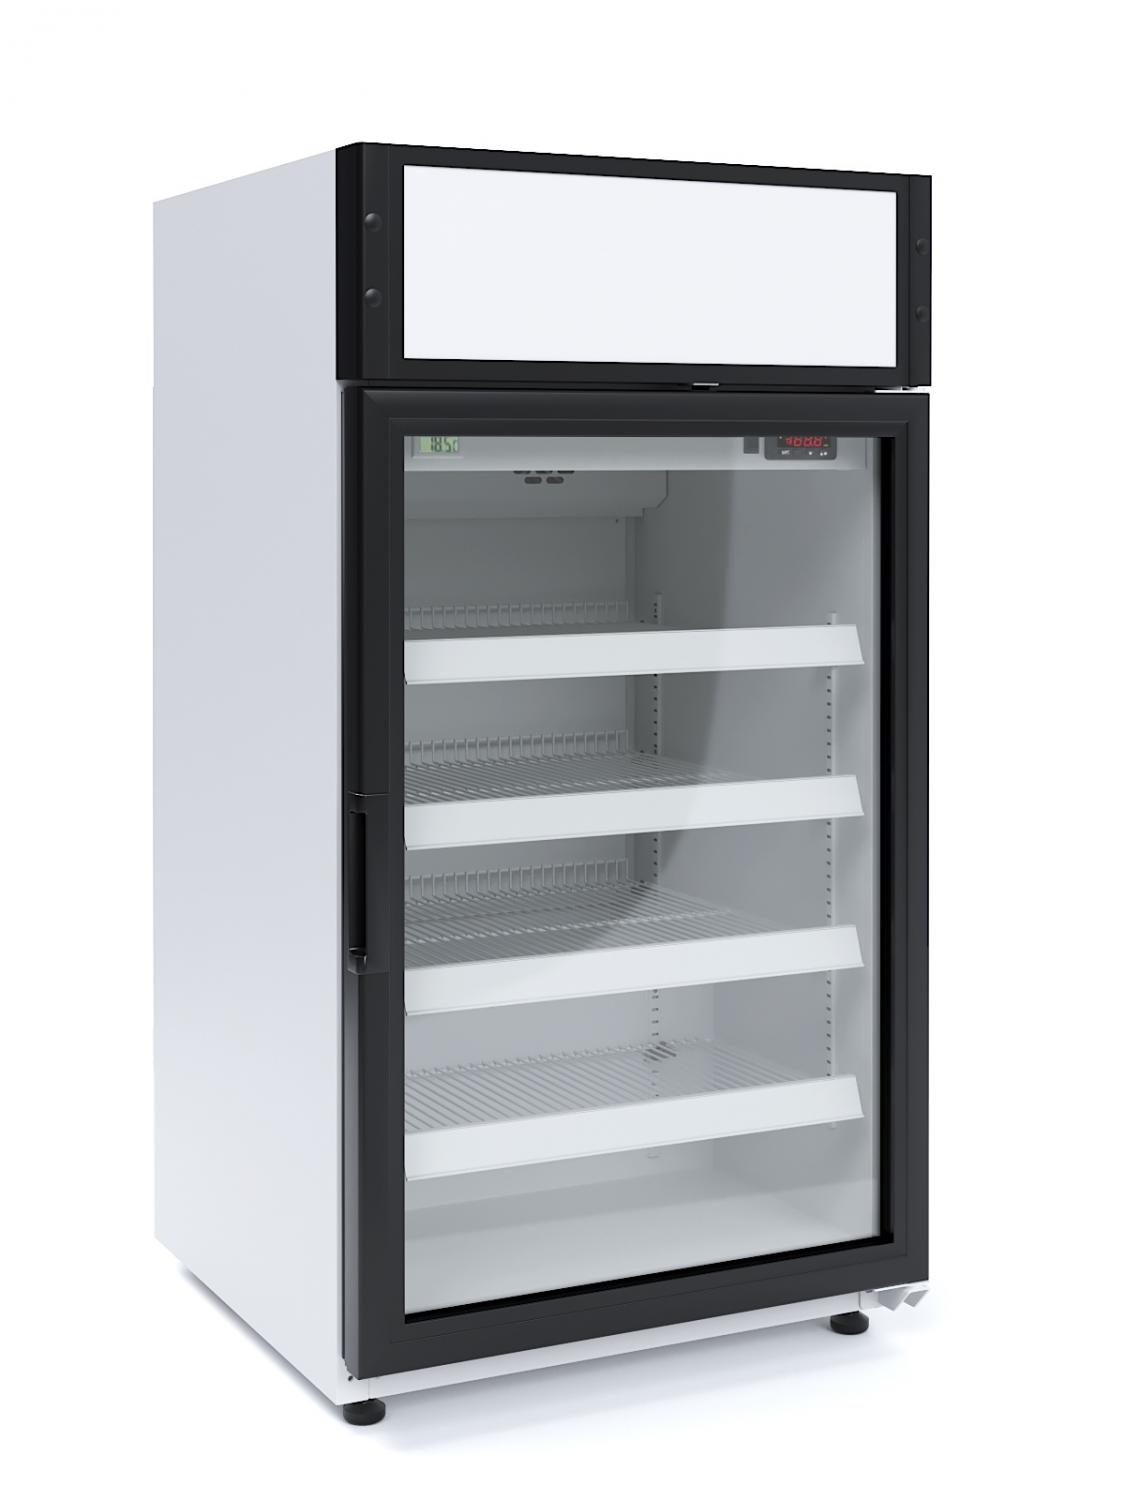 Холодильный шкаф ШХСн 0,15СК